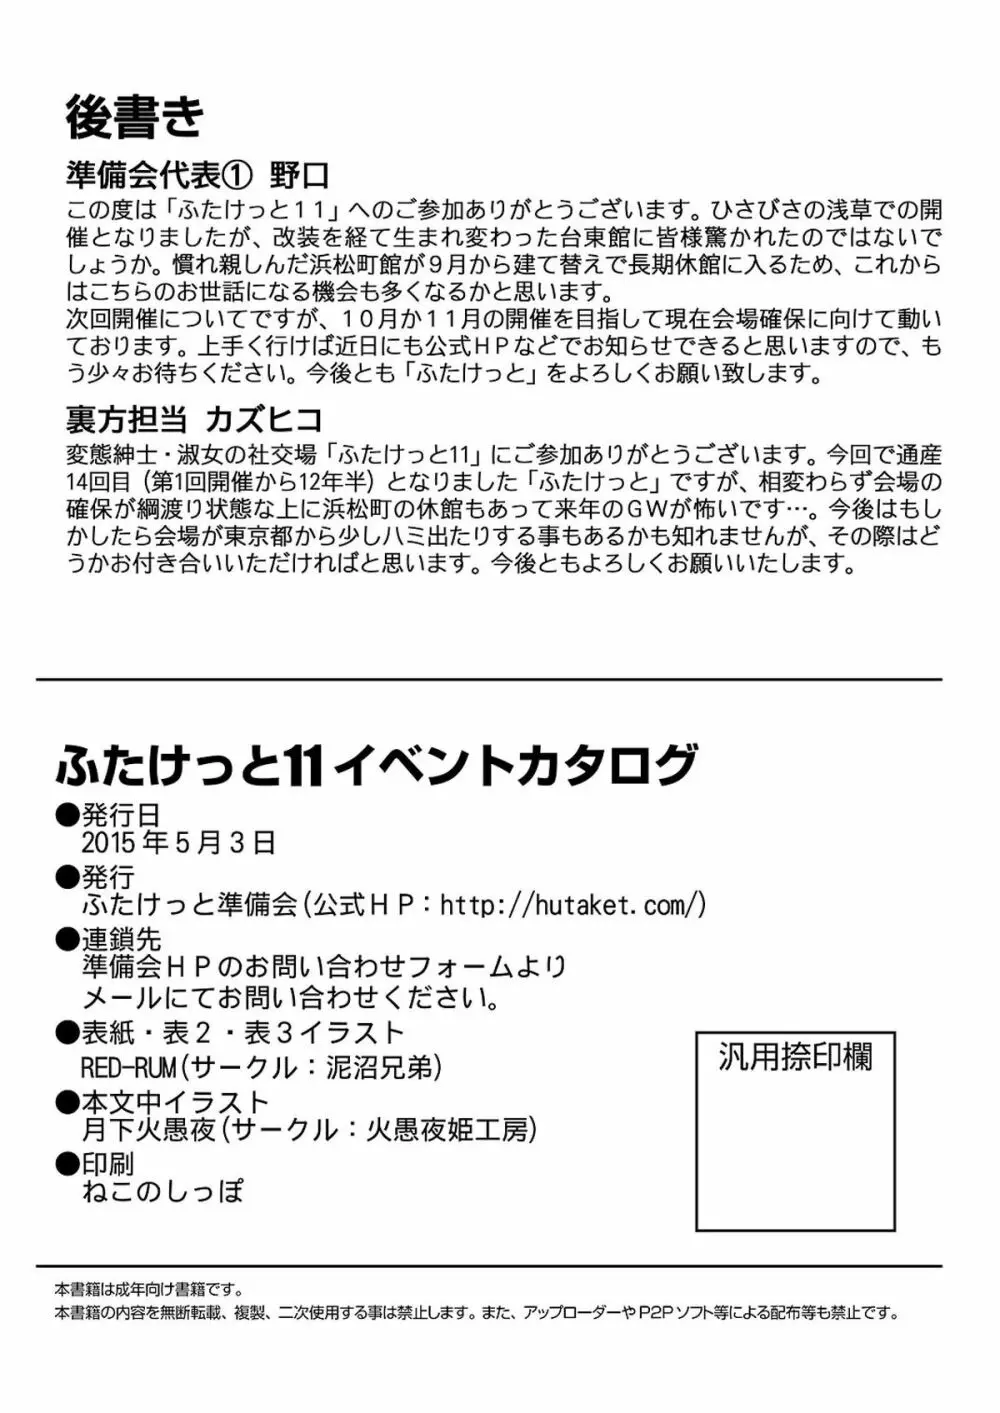 「ふたけっと11」PDF版カタログ 67ページ